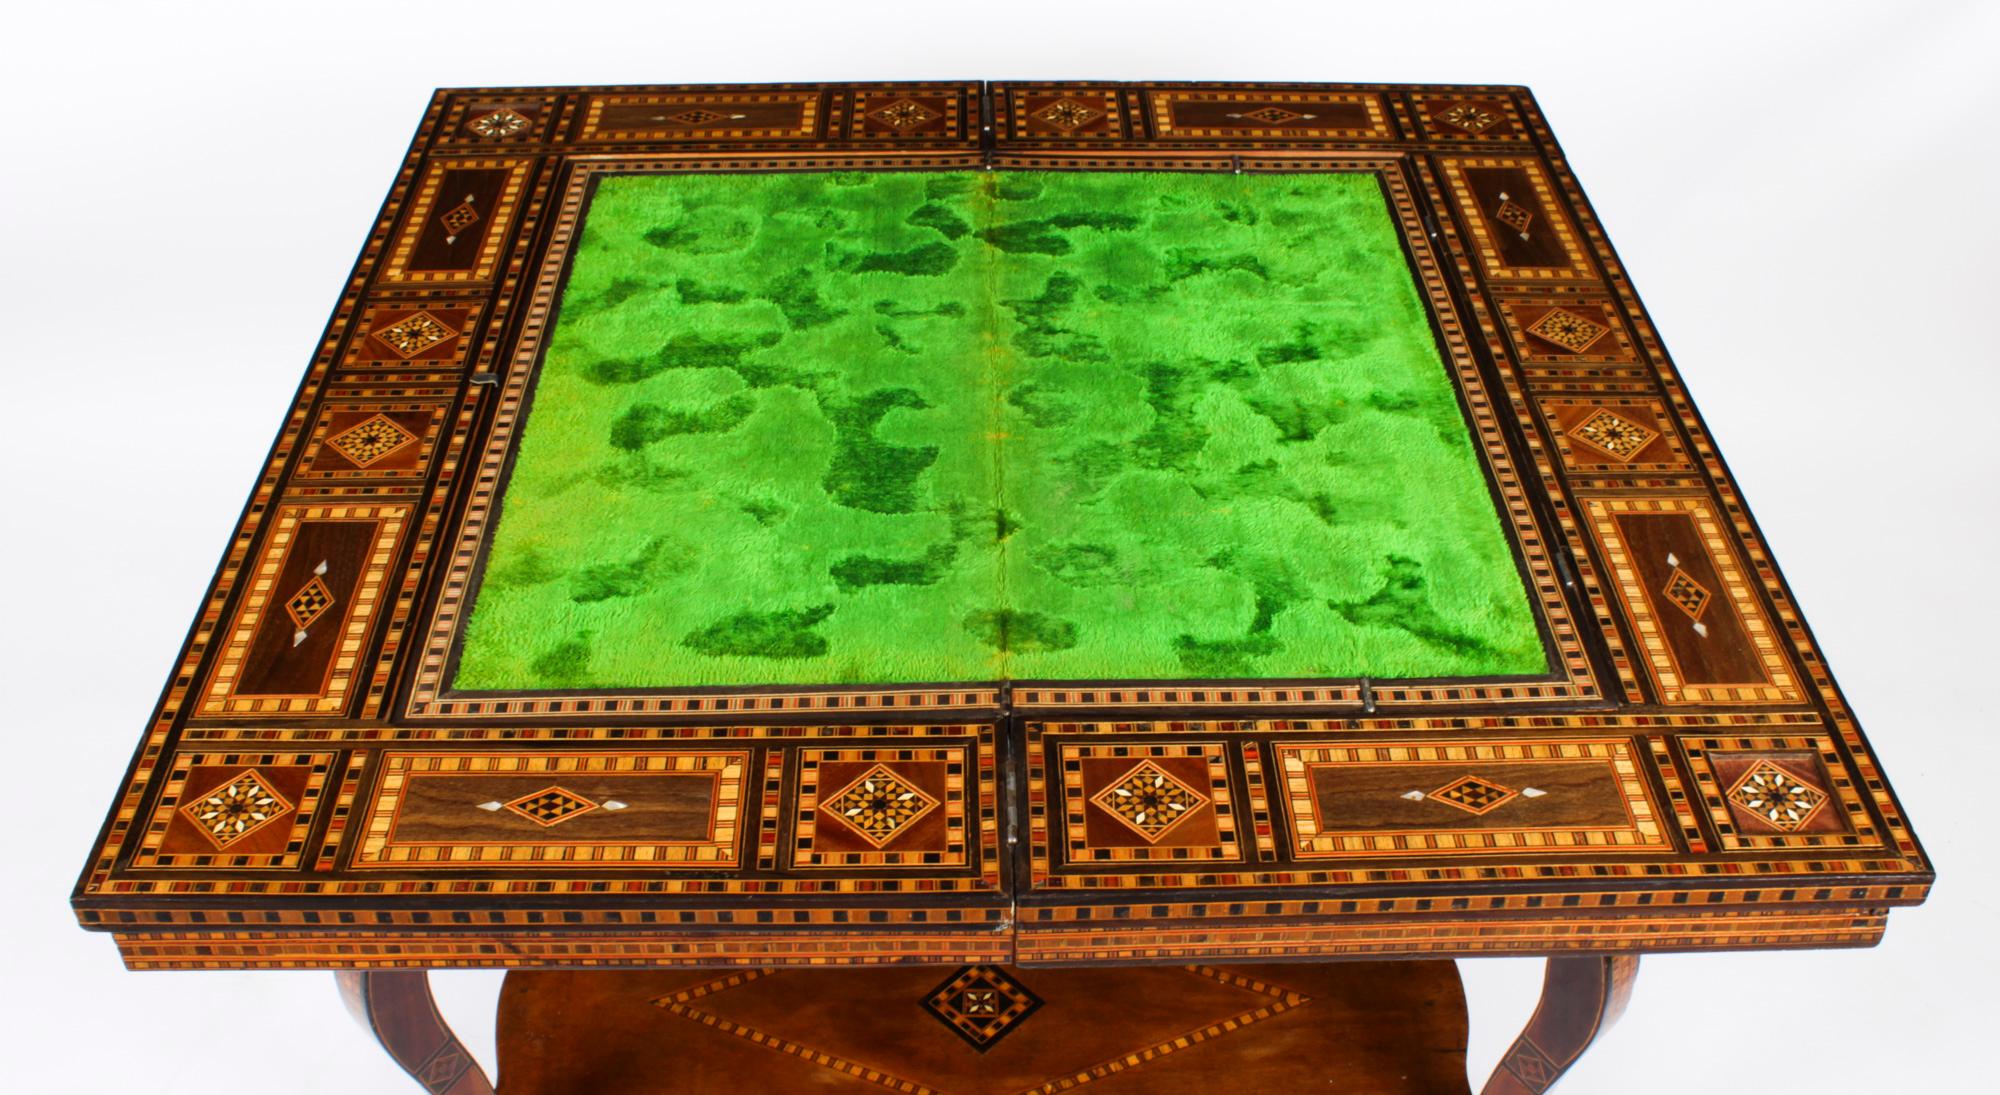 Ancienne table de jeu incrustée syrienne de Syrie, jeu d'échecs et backgammon, début du 20e siècle 5